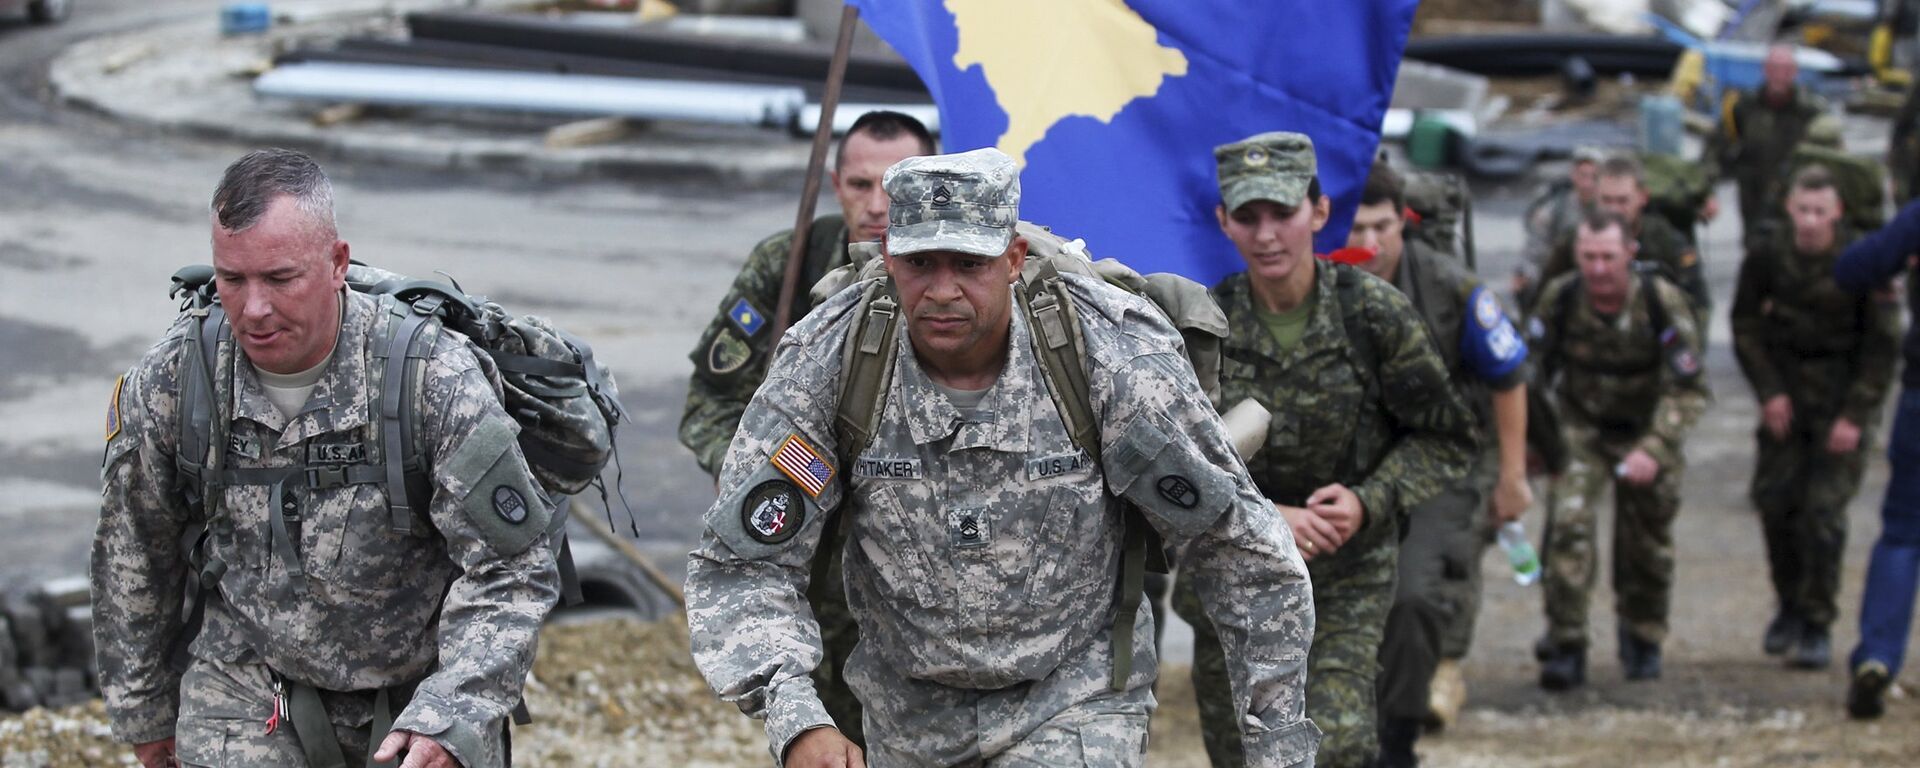 Два америчка војника марширају припадника испред Косовских безбедносних снага (КБС) који носе  заставу самопроглашеног Косова  - Sputnik Србија, 1920, 02.01.2021